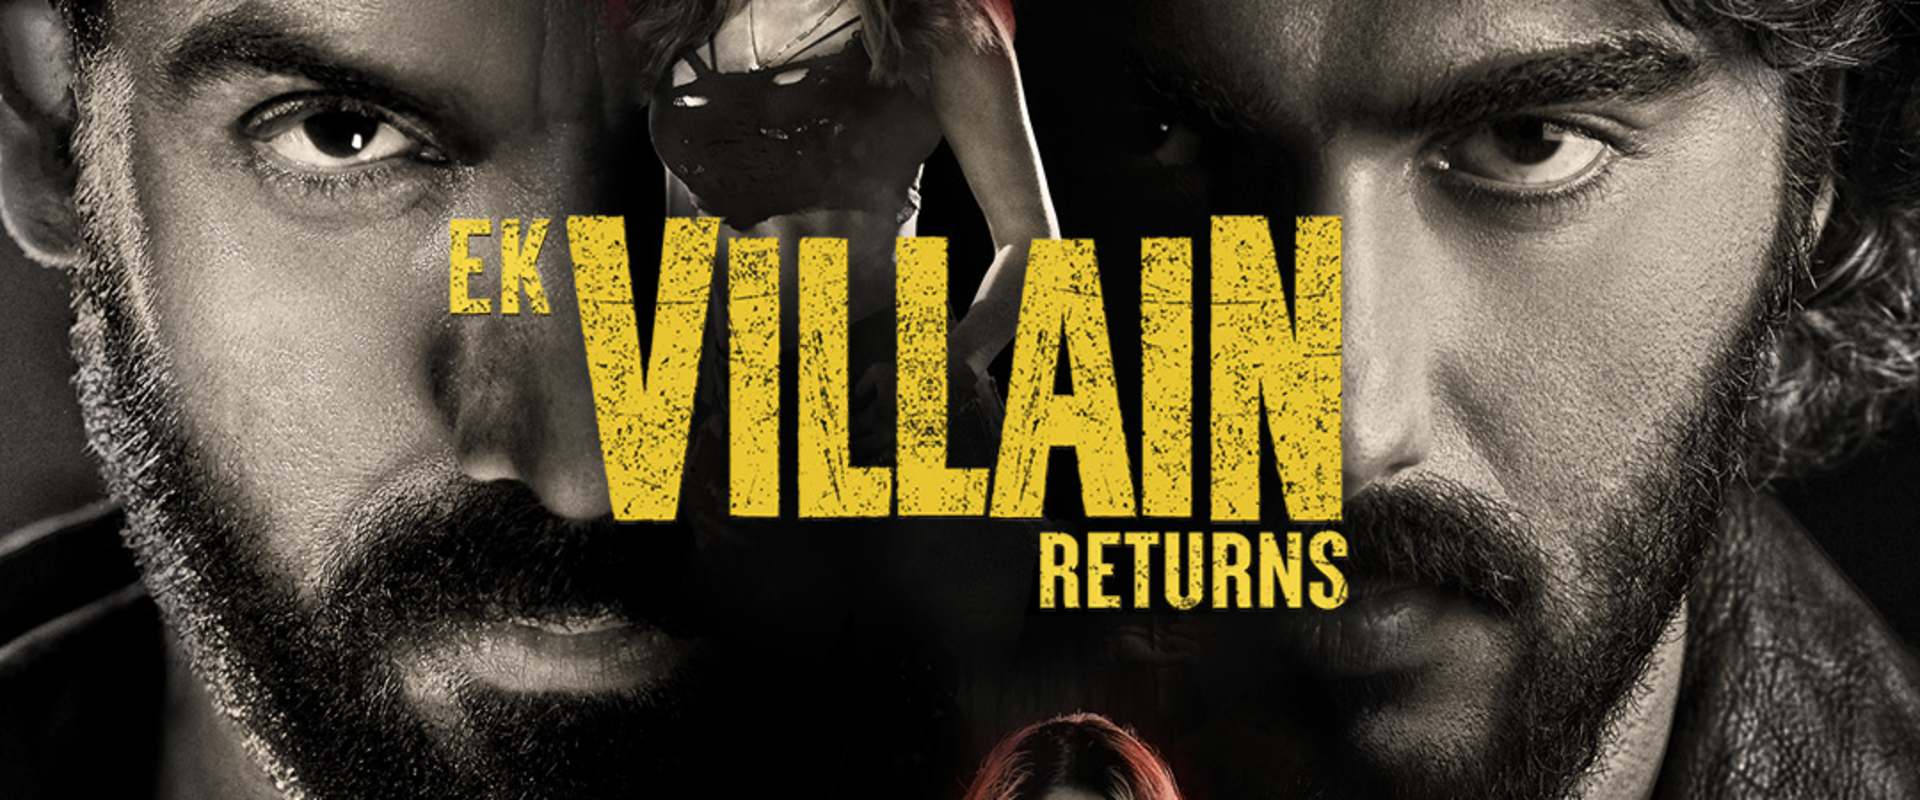 Ek Villain Returns background 2